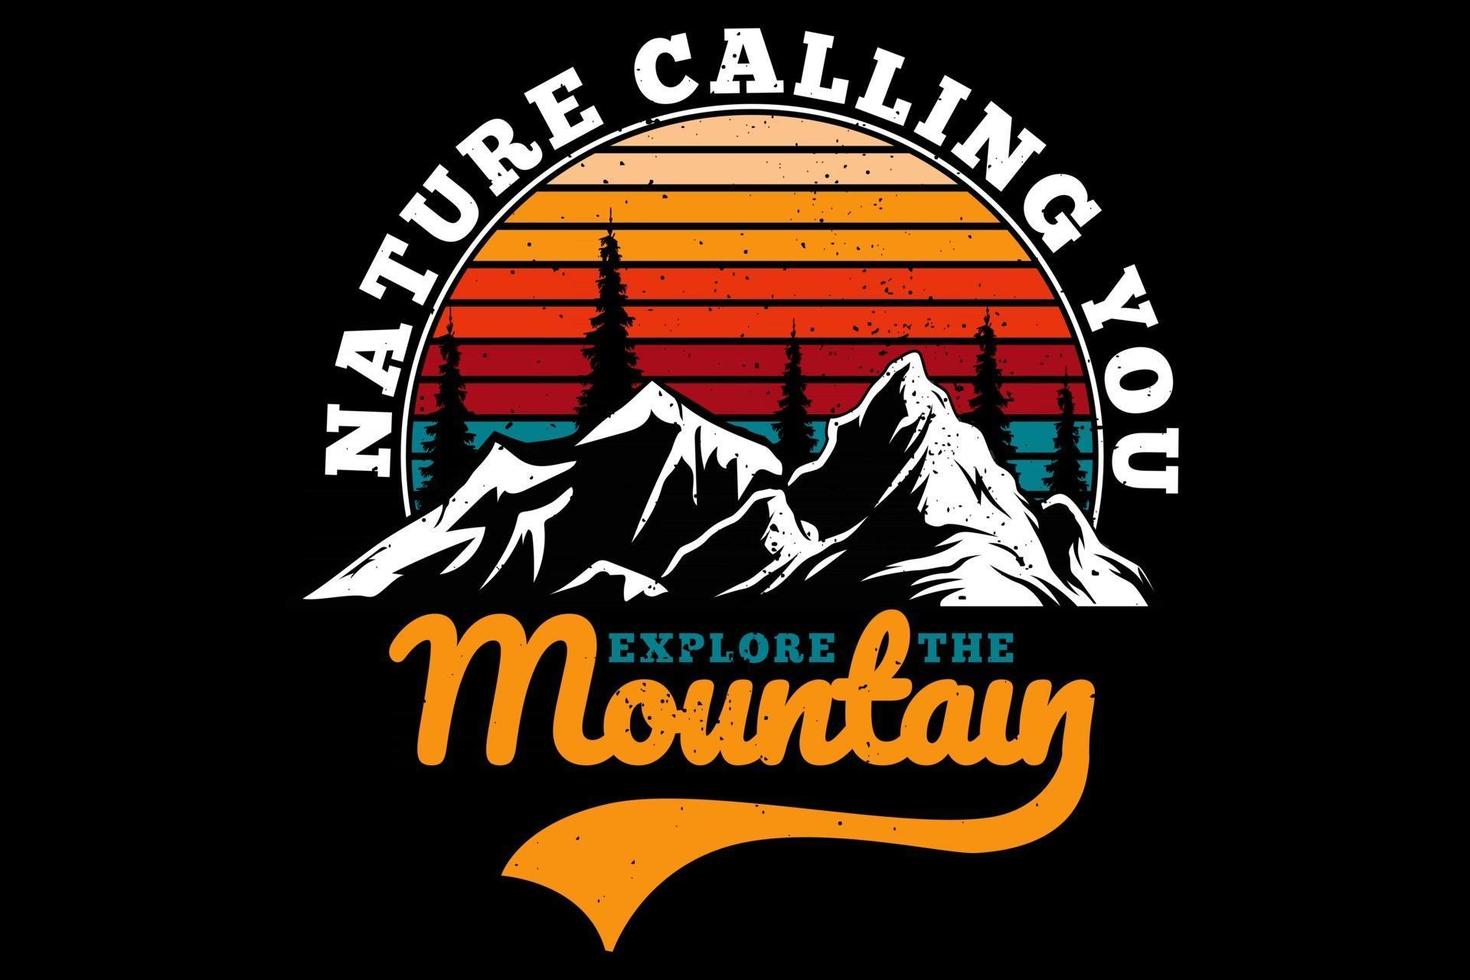 camiseta explore a natureza da montanha chamando você de estilo retro vetor